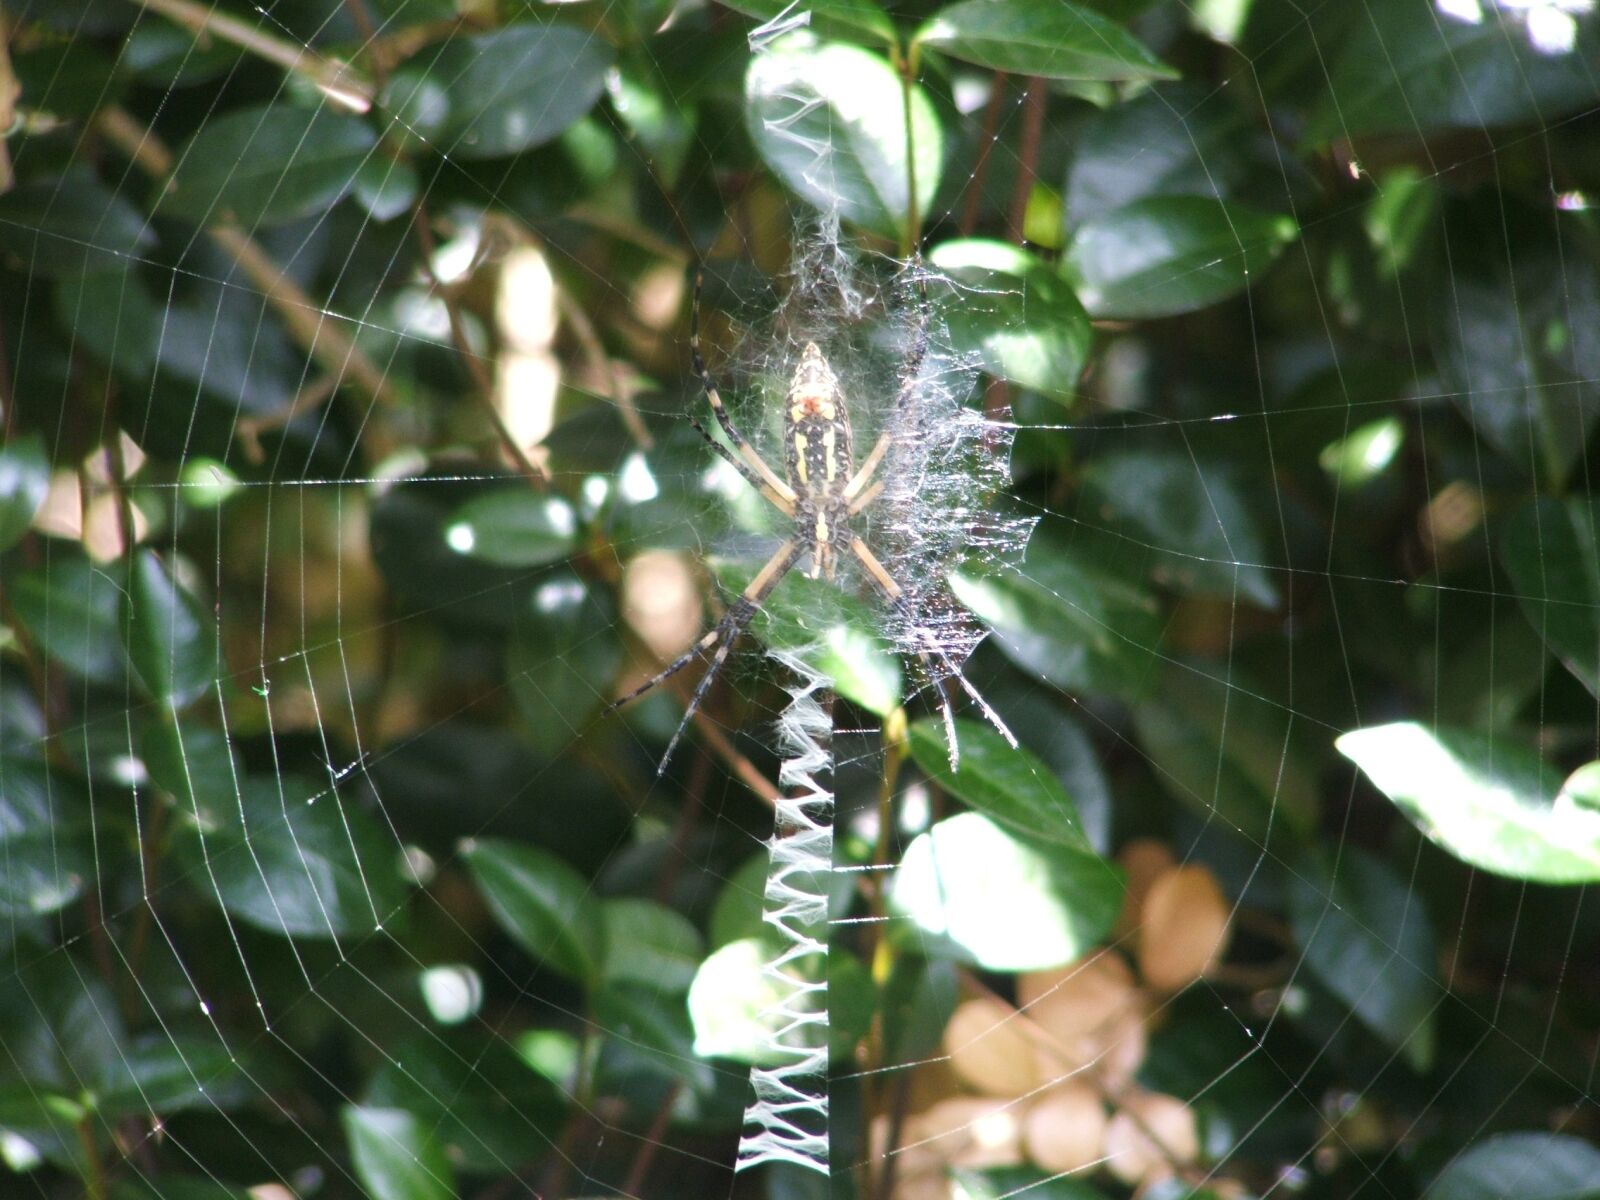 Fujifilm FinePix S3100 sample photo. Spider, spiderweb, web photography